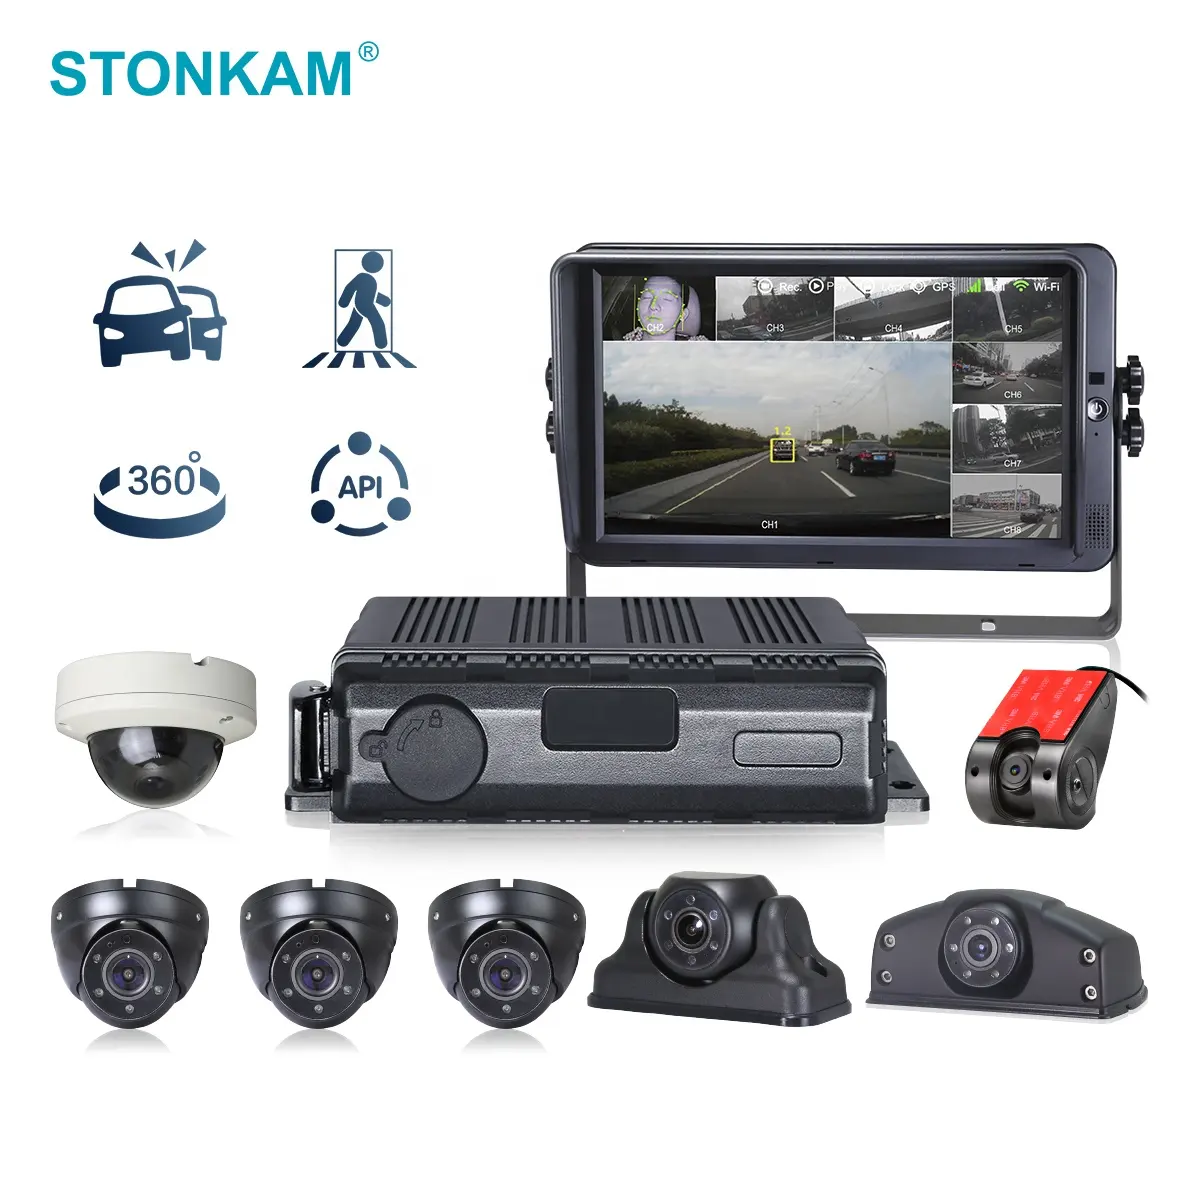 STONKAM 4G 8CH MDVR sistema di telecamere per veicoli ADAS + DMS + BSD/360 algoritmo IP69K impermeabile per la sicurezza delle auto e la gestione della flotta